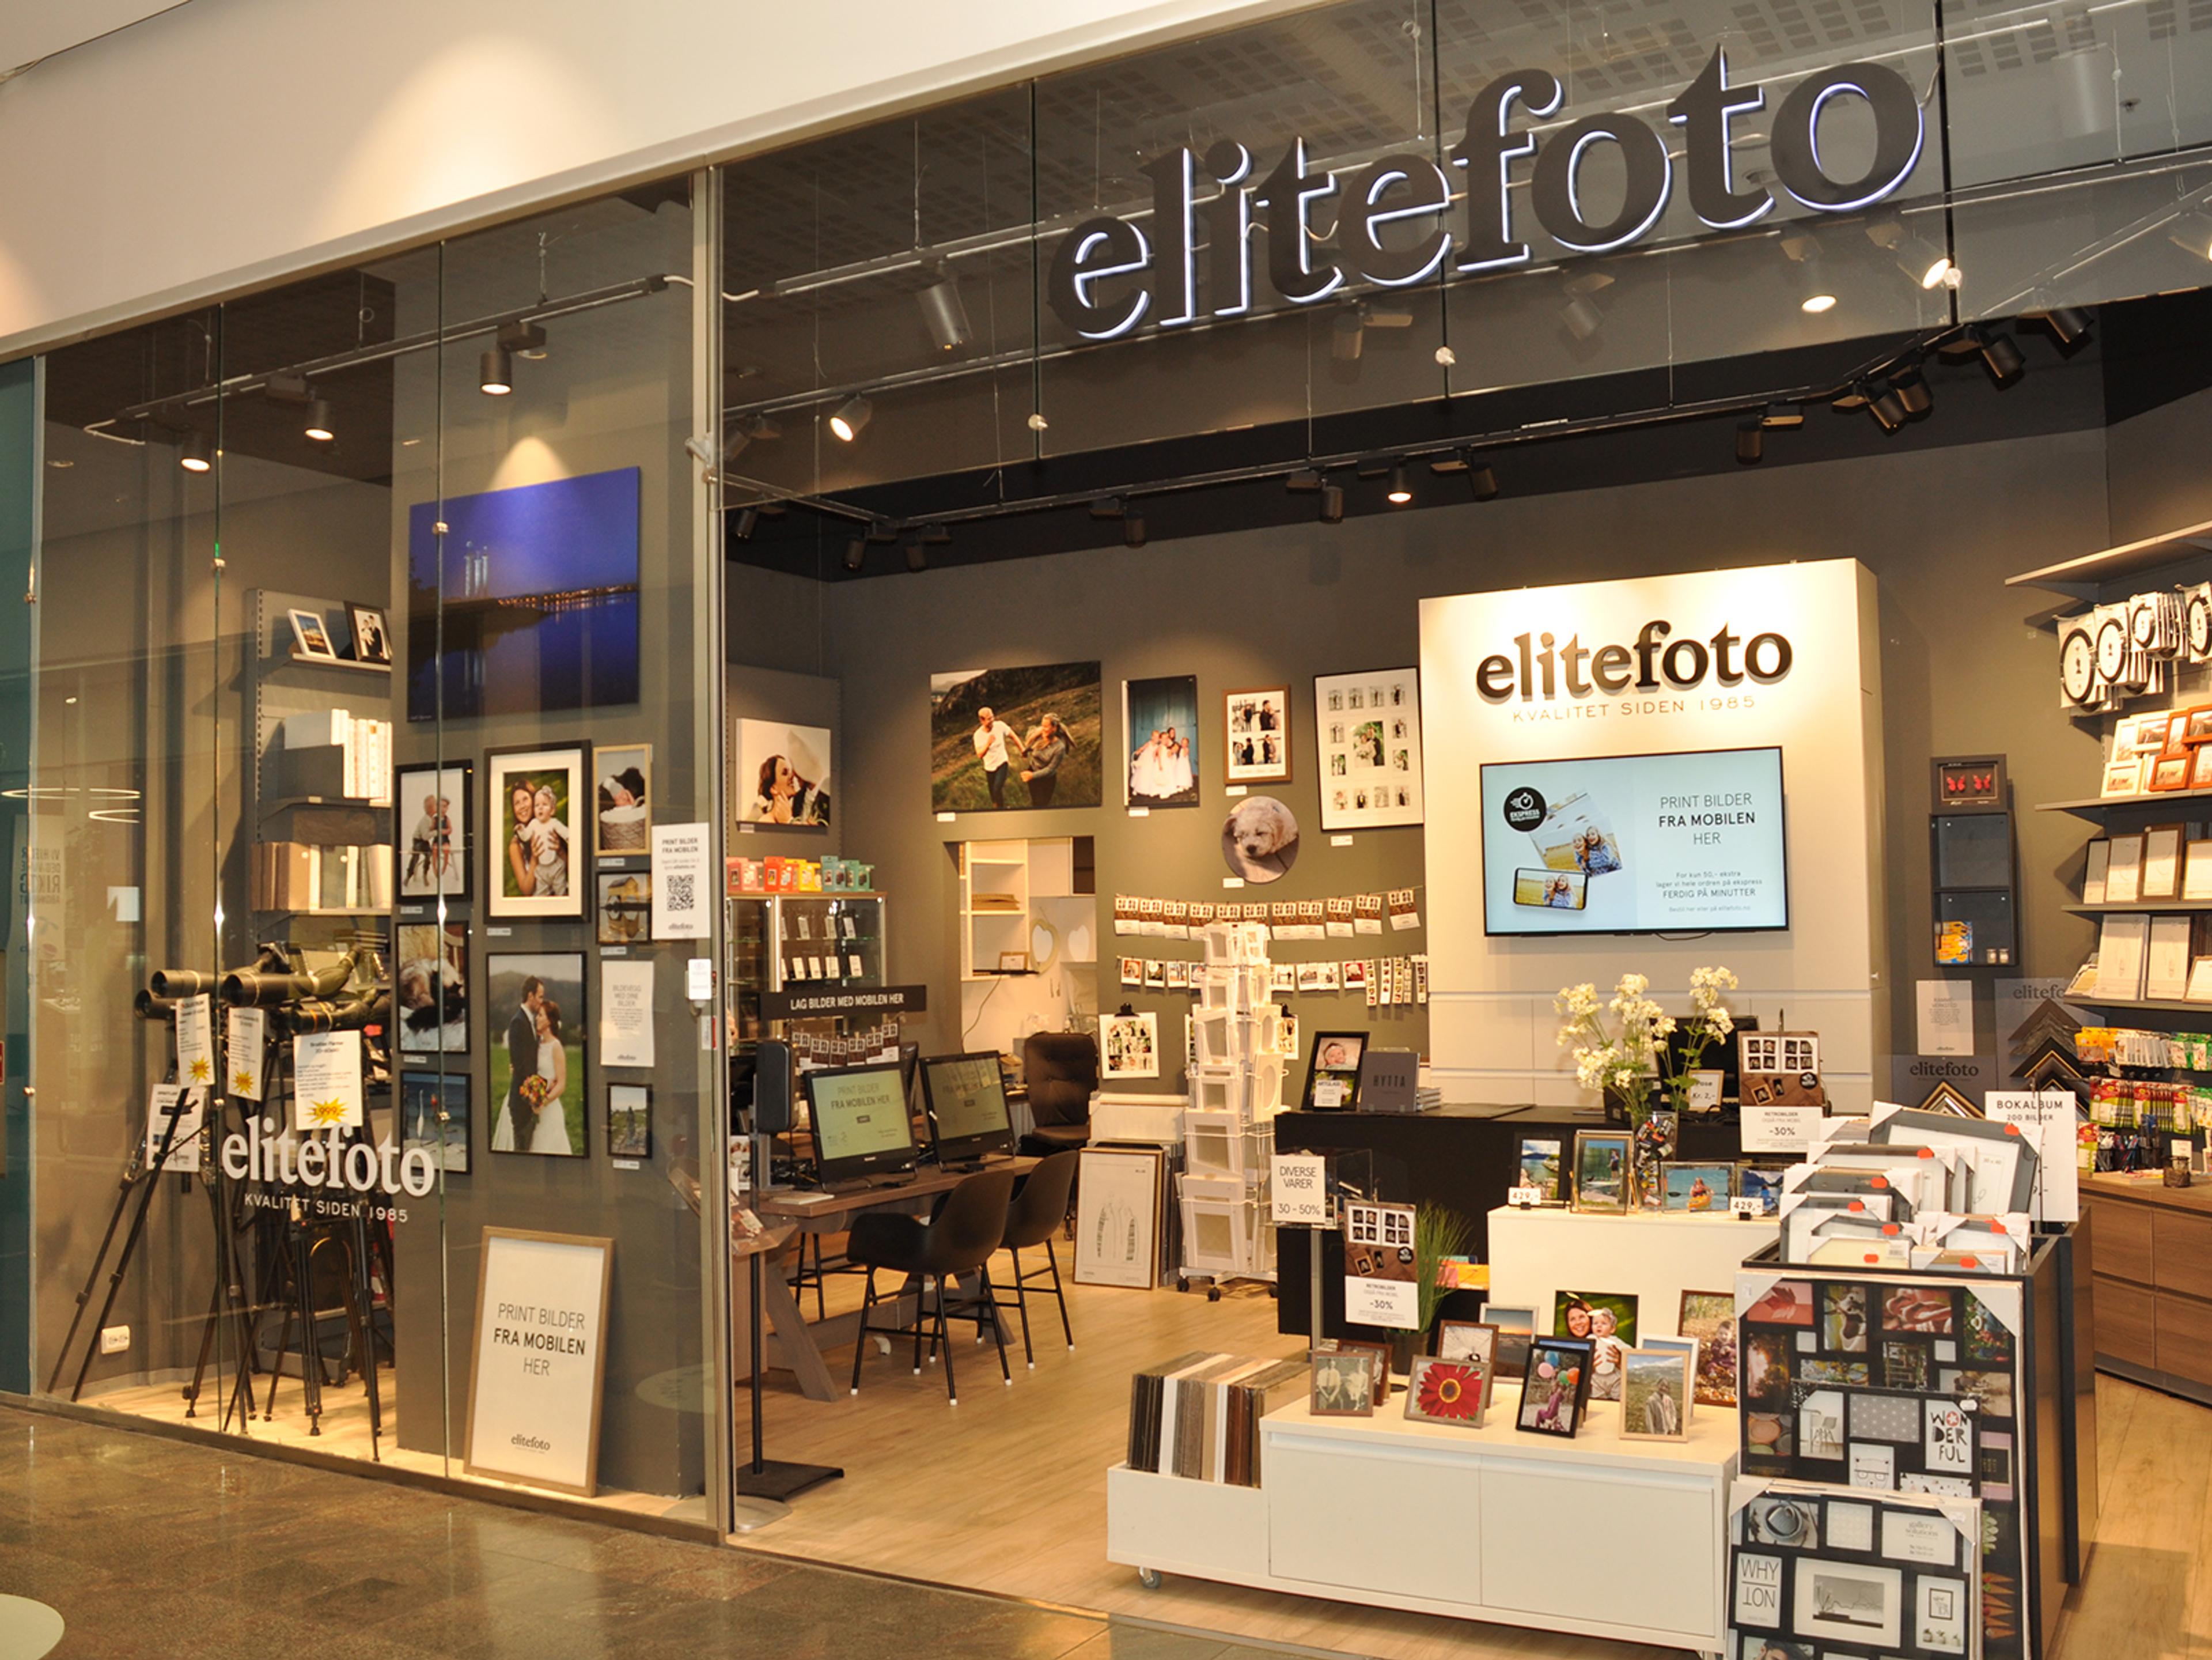 Elite Fotos butikk i Amfi Madla i Stavanger